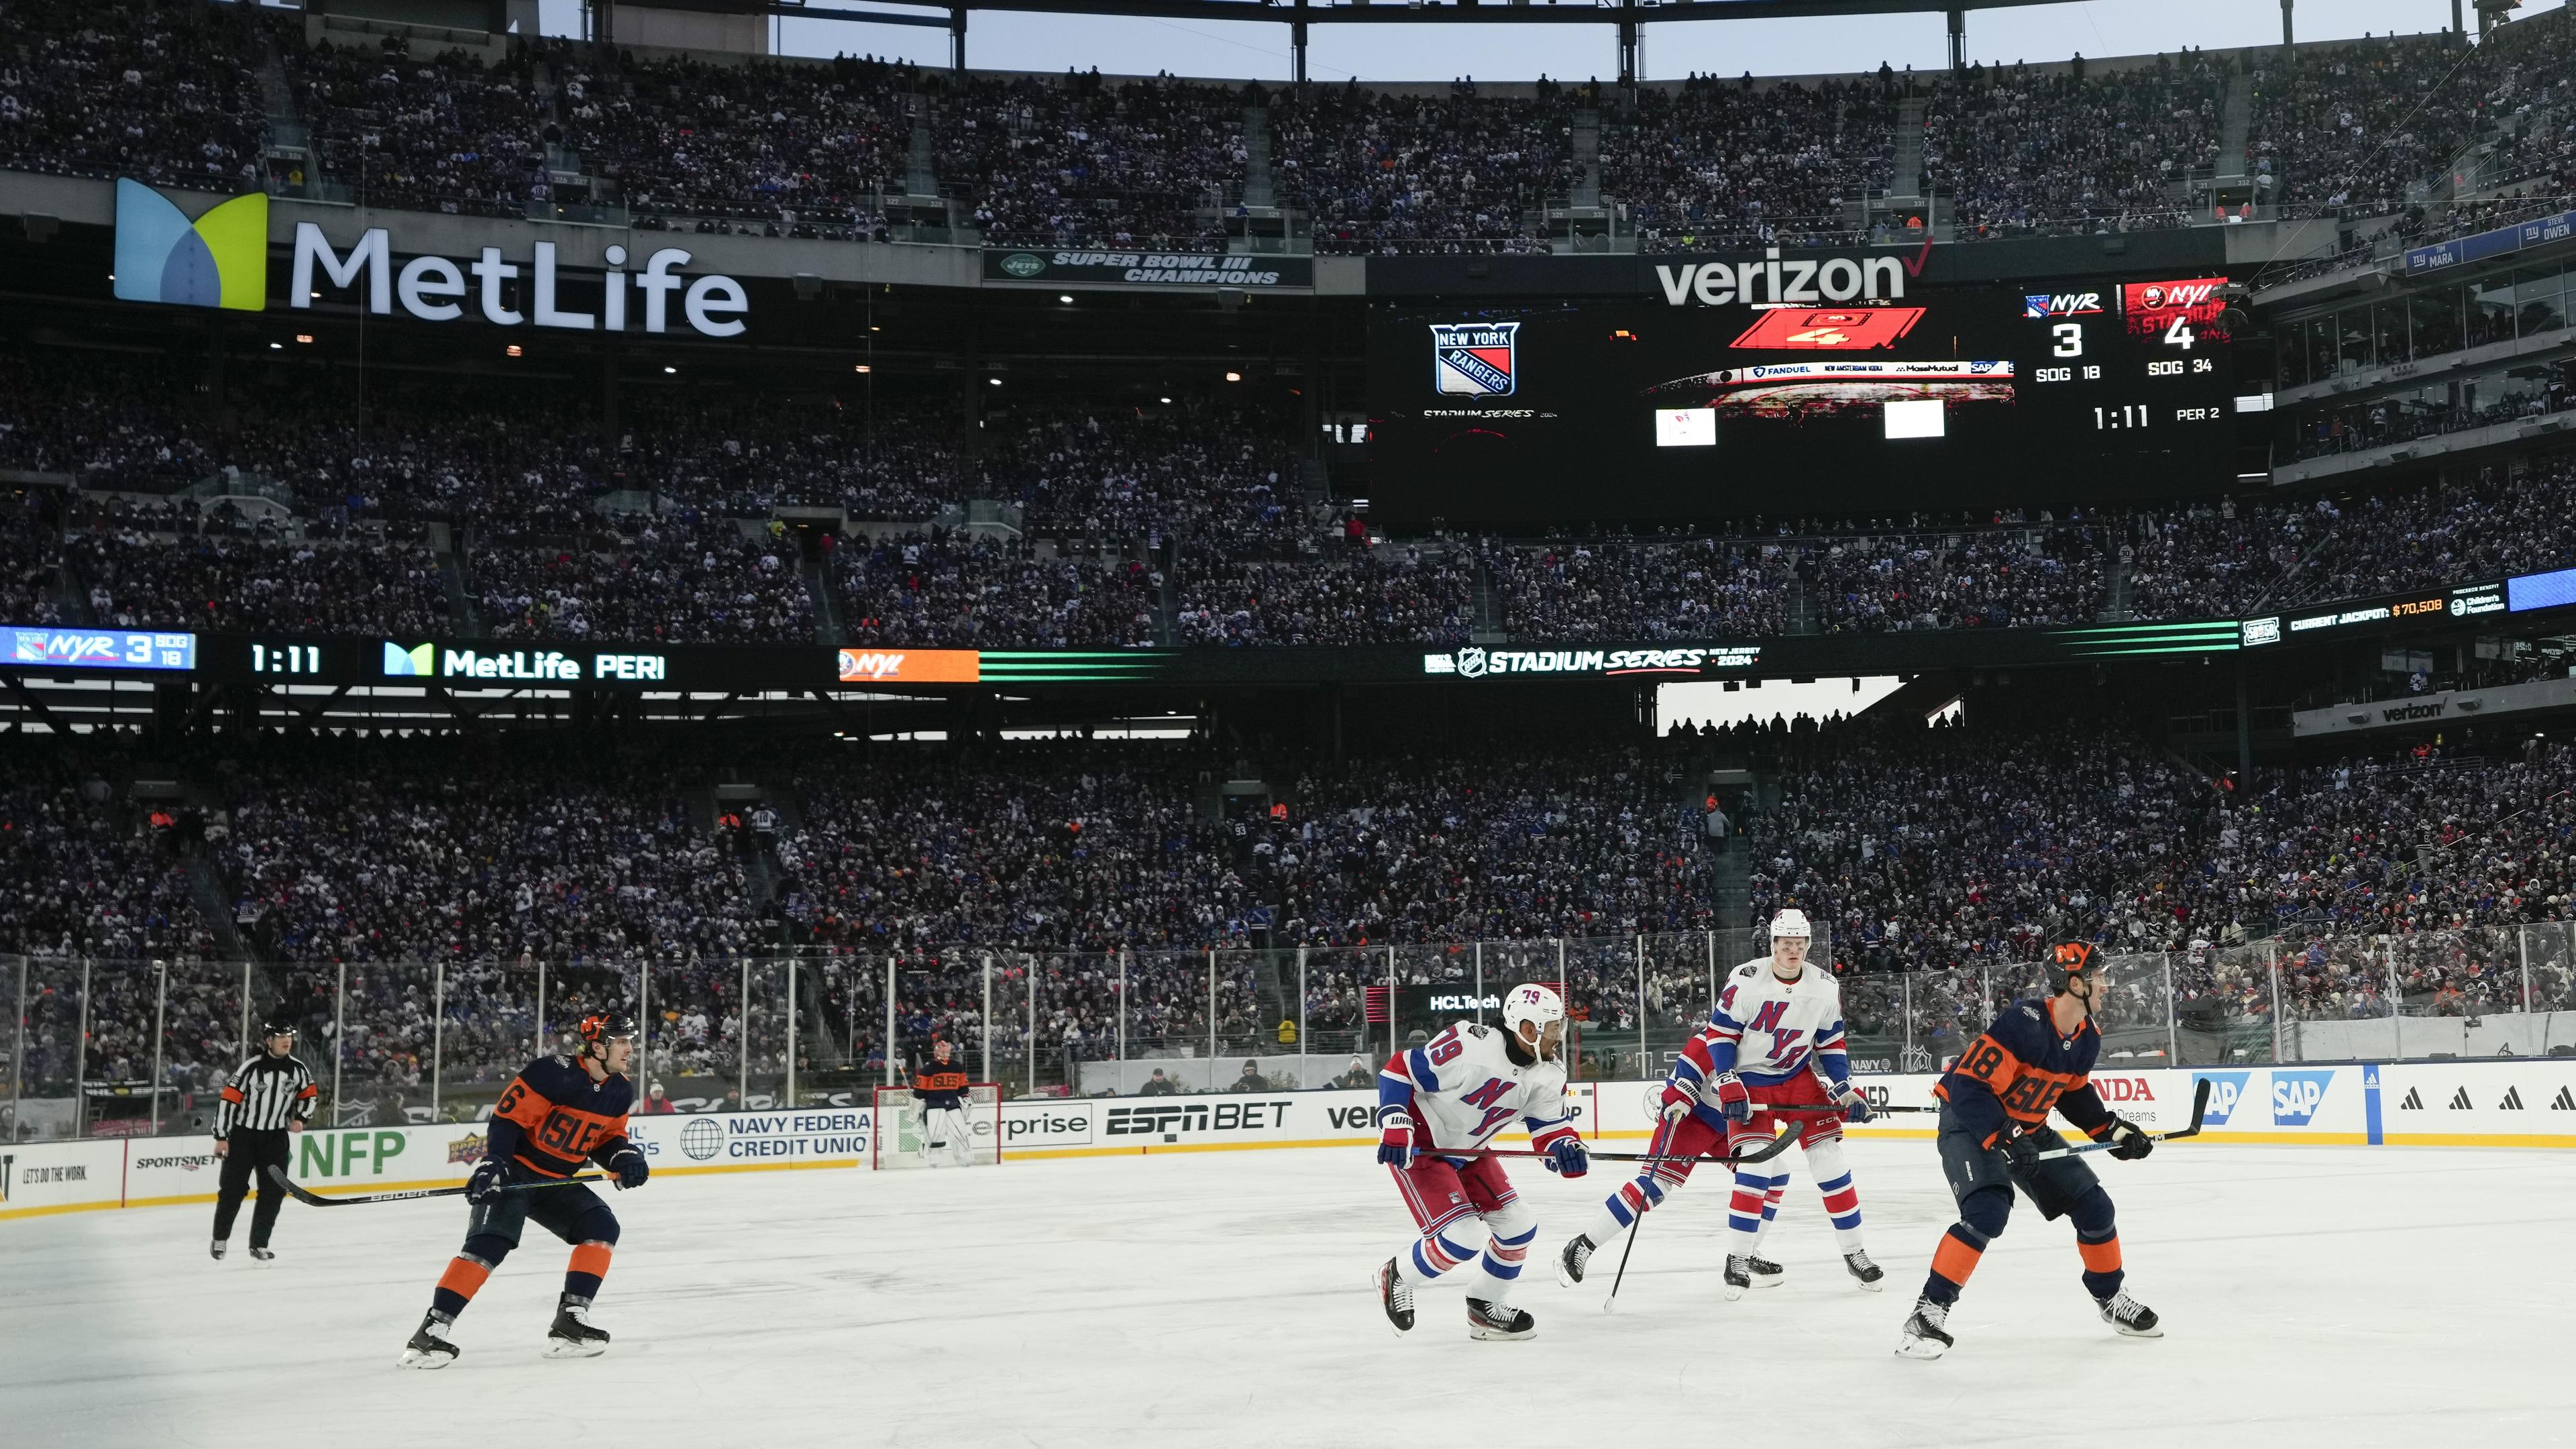 Nästan 80 000 åskådare såg NHL-matchen mellan Rangers och Islanders. Foto: Seth Wenig/AP/TT